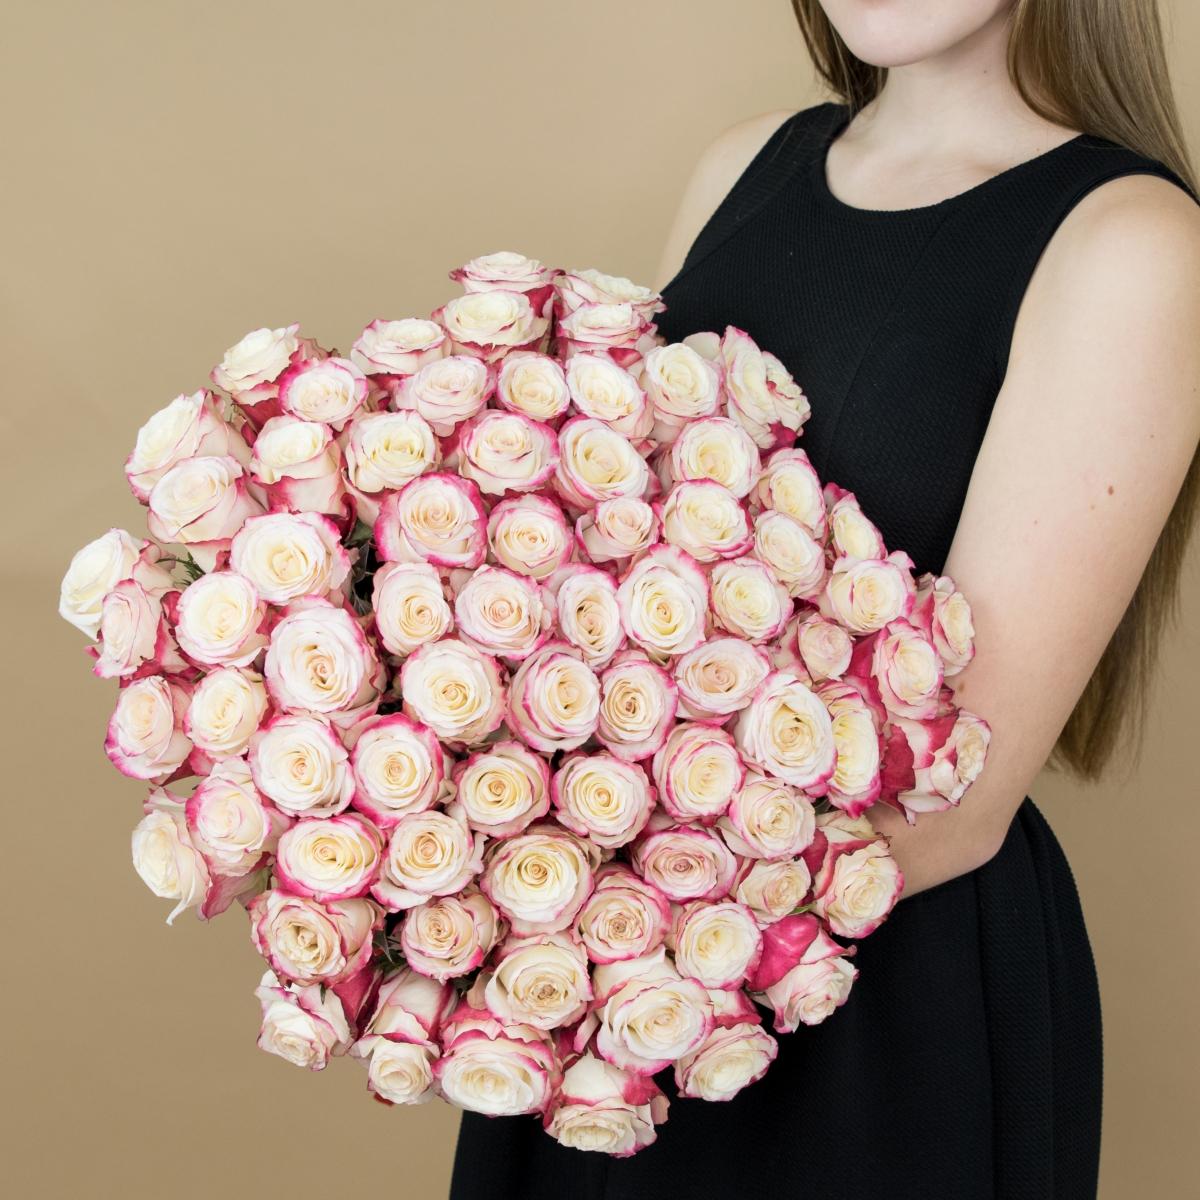 Розы красно-белые 101 шт. (40 см) (articul: 16554)